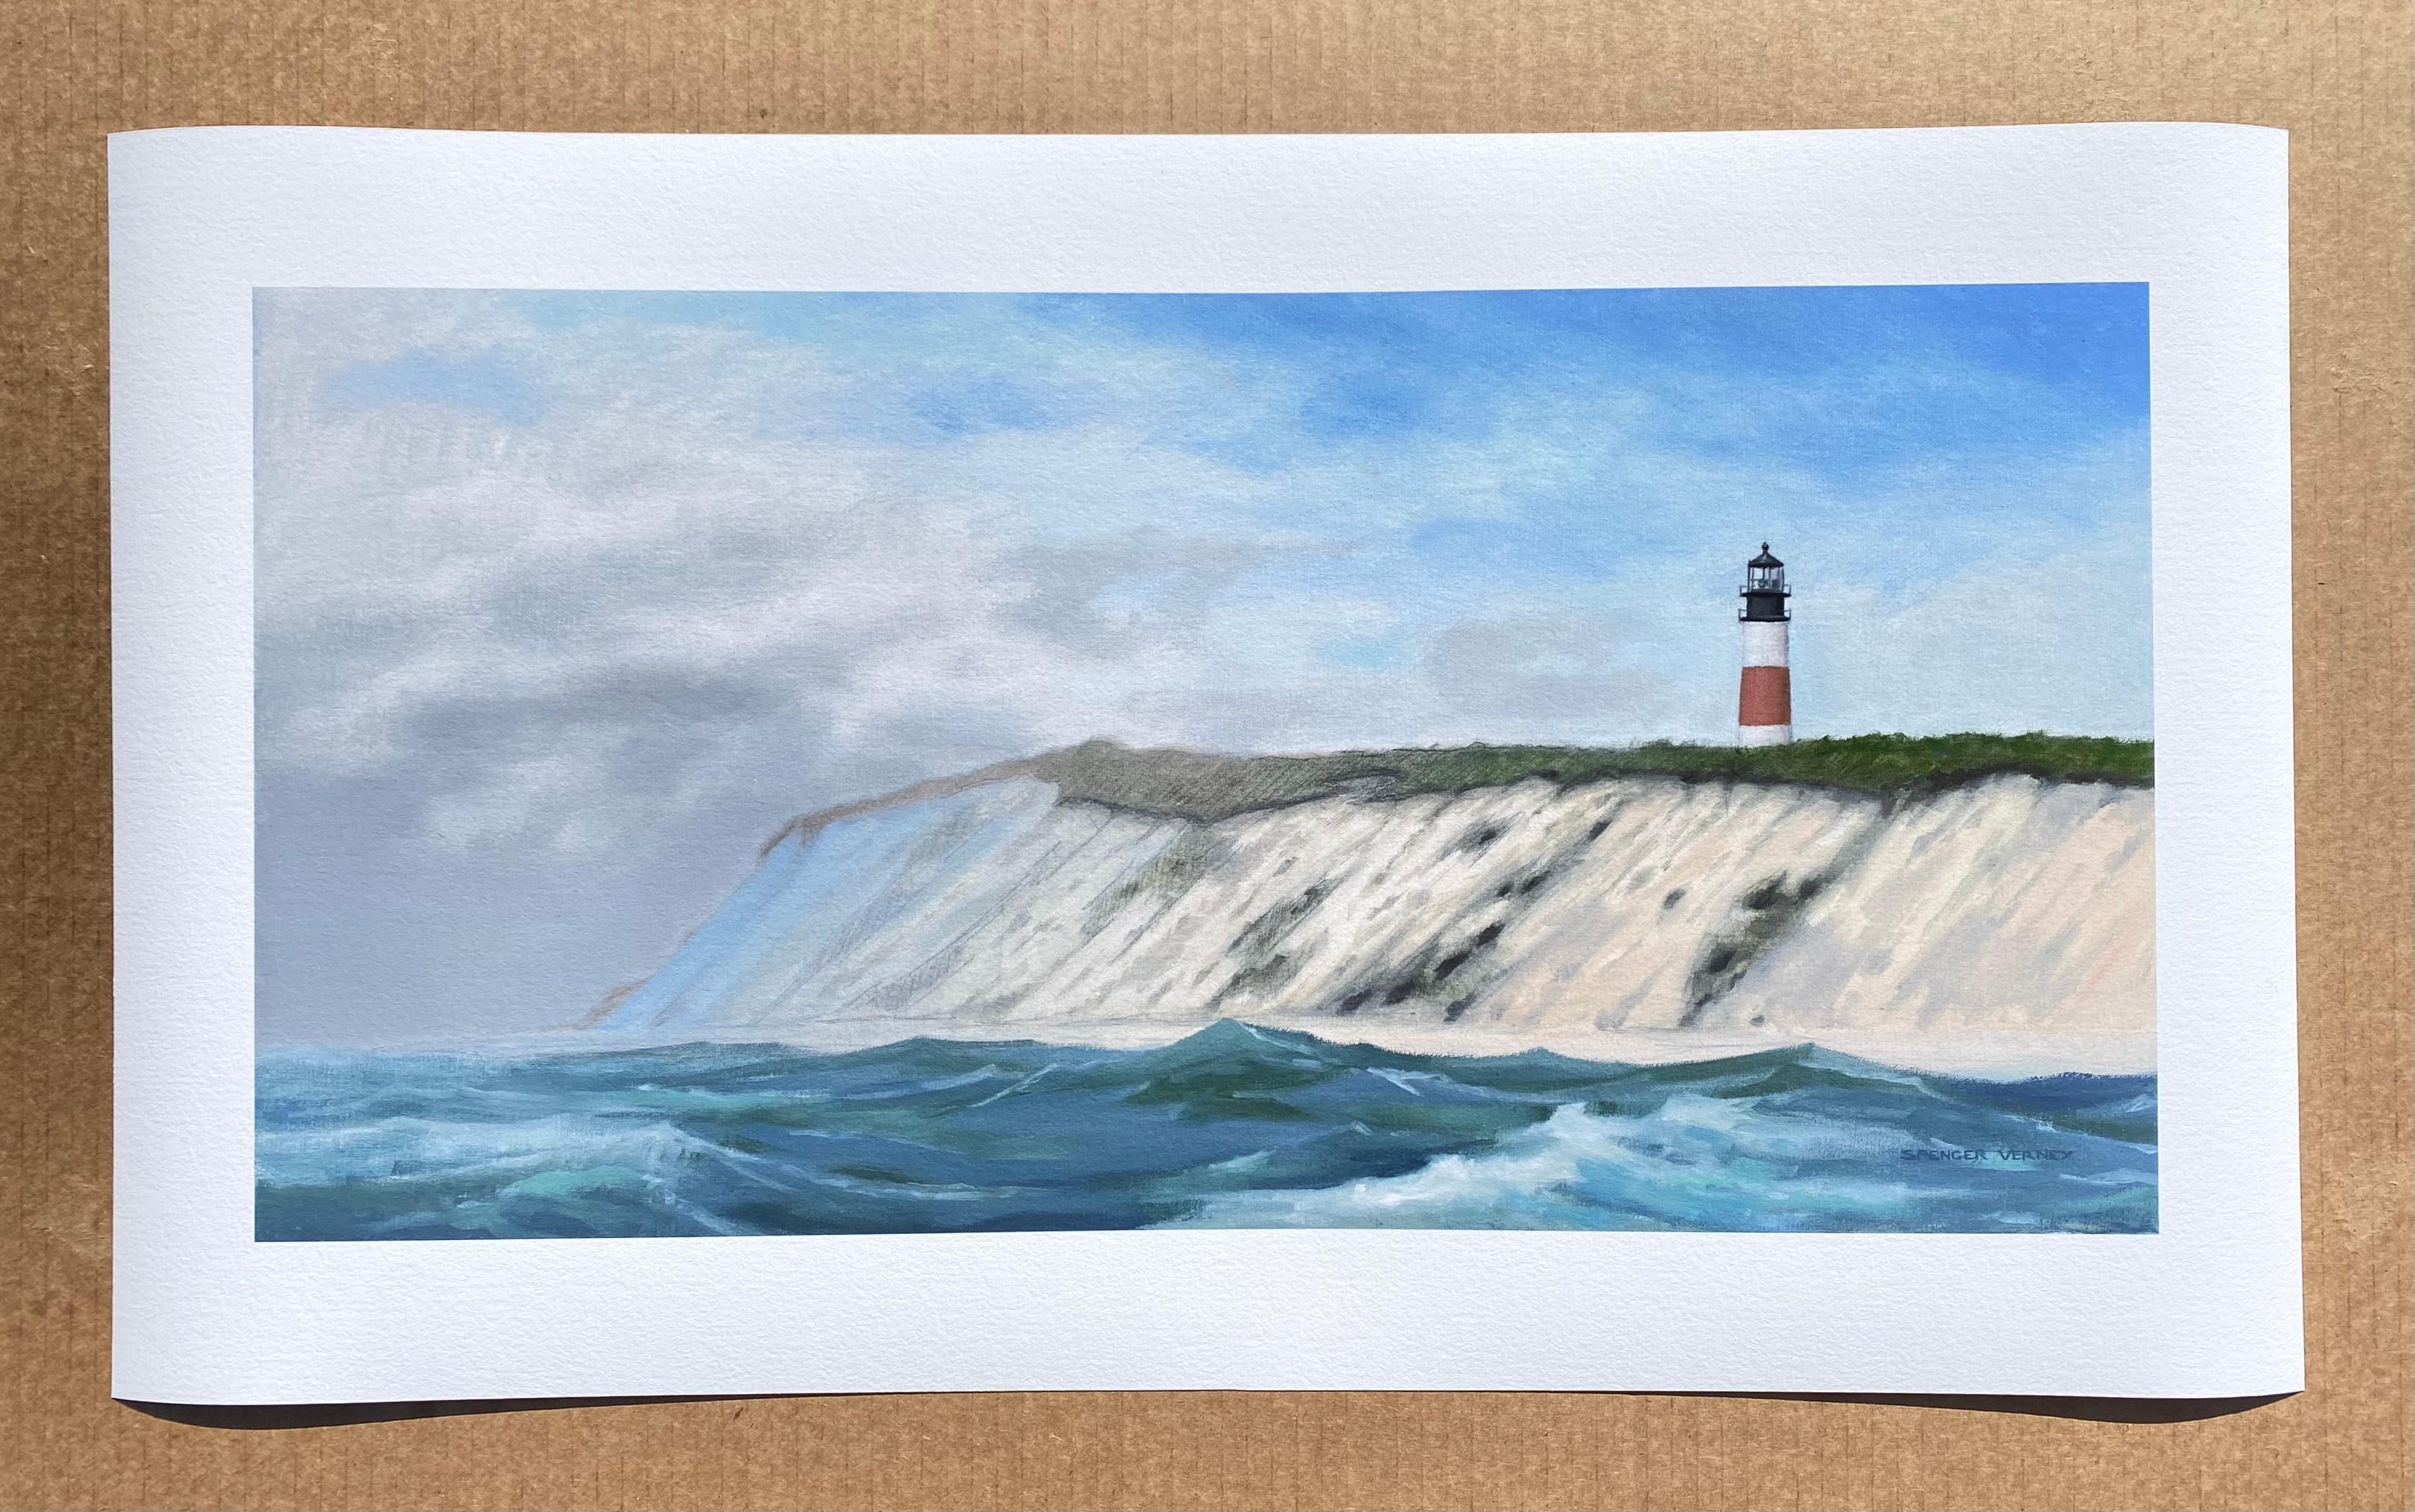 Nantucket, Sankaty Lighthouse (Limited edition giclée print) - Print by Spencer Verney